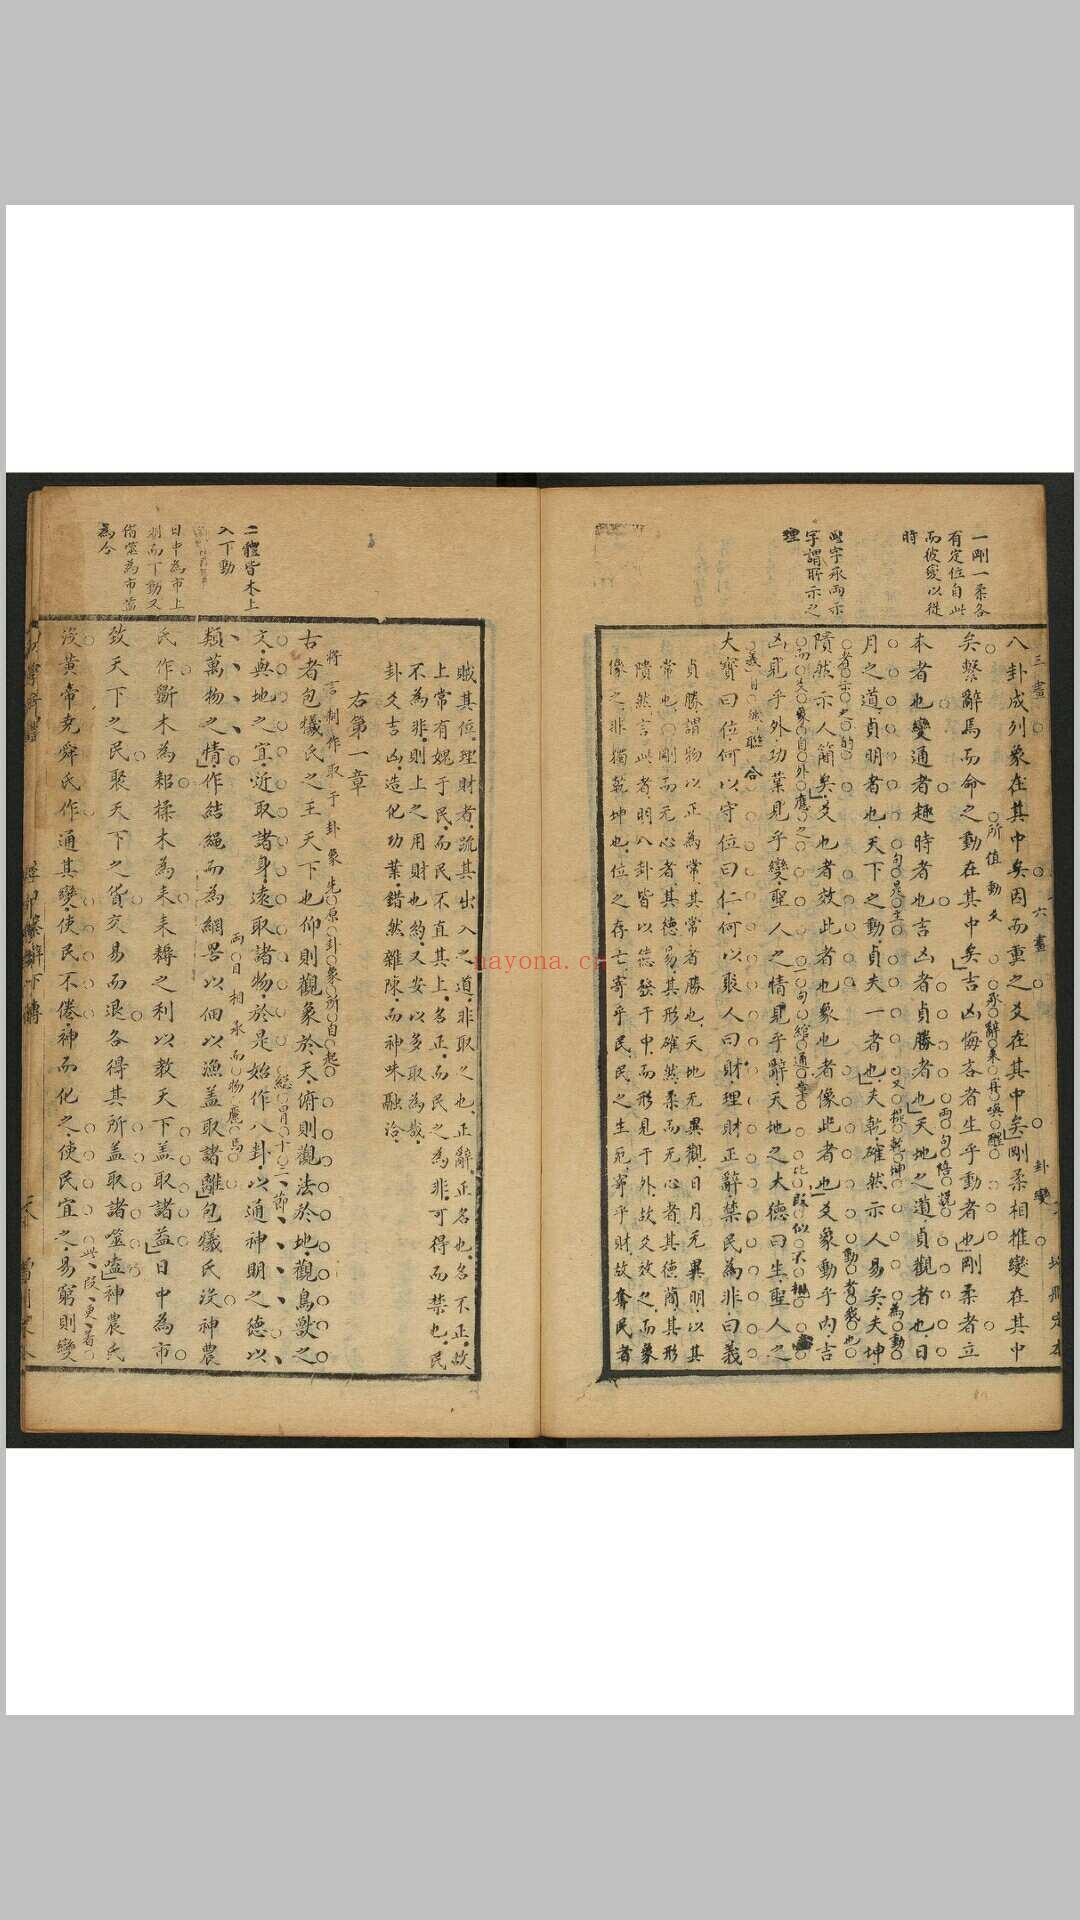 初学辨体增删定本 不分卷 徐与乔辑评 易安斋, 清康熙17年